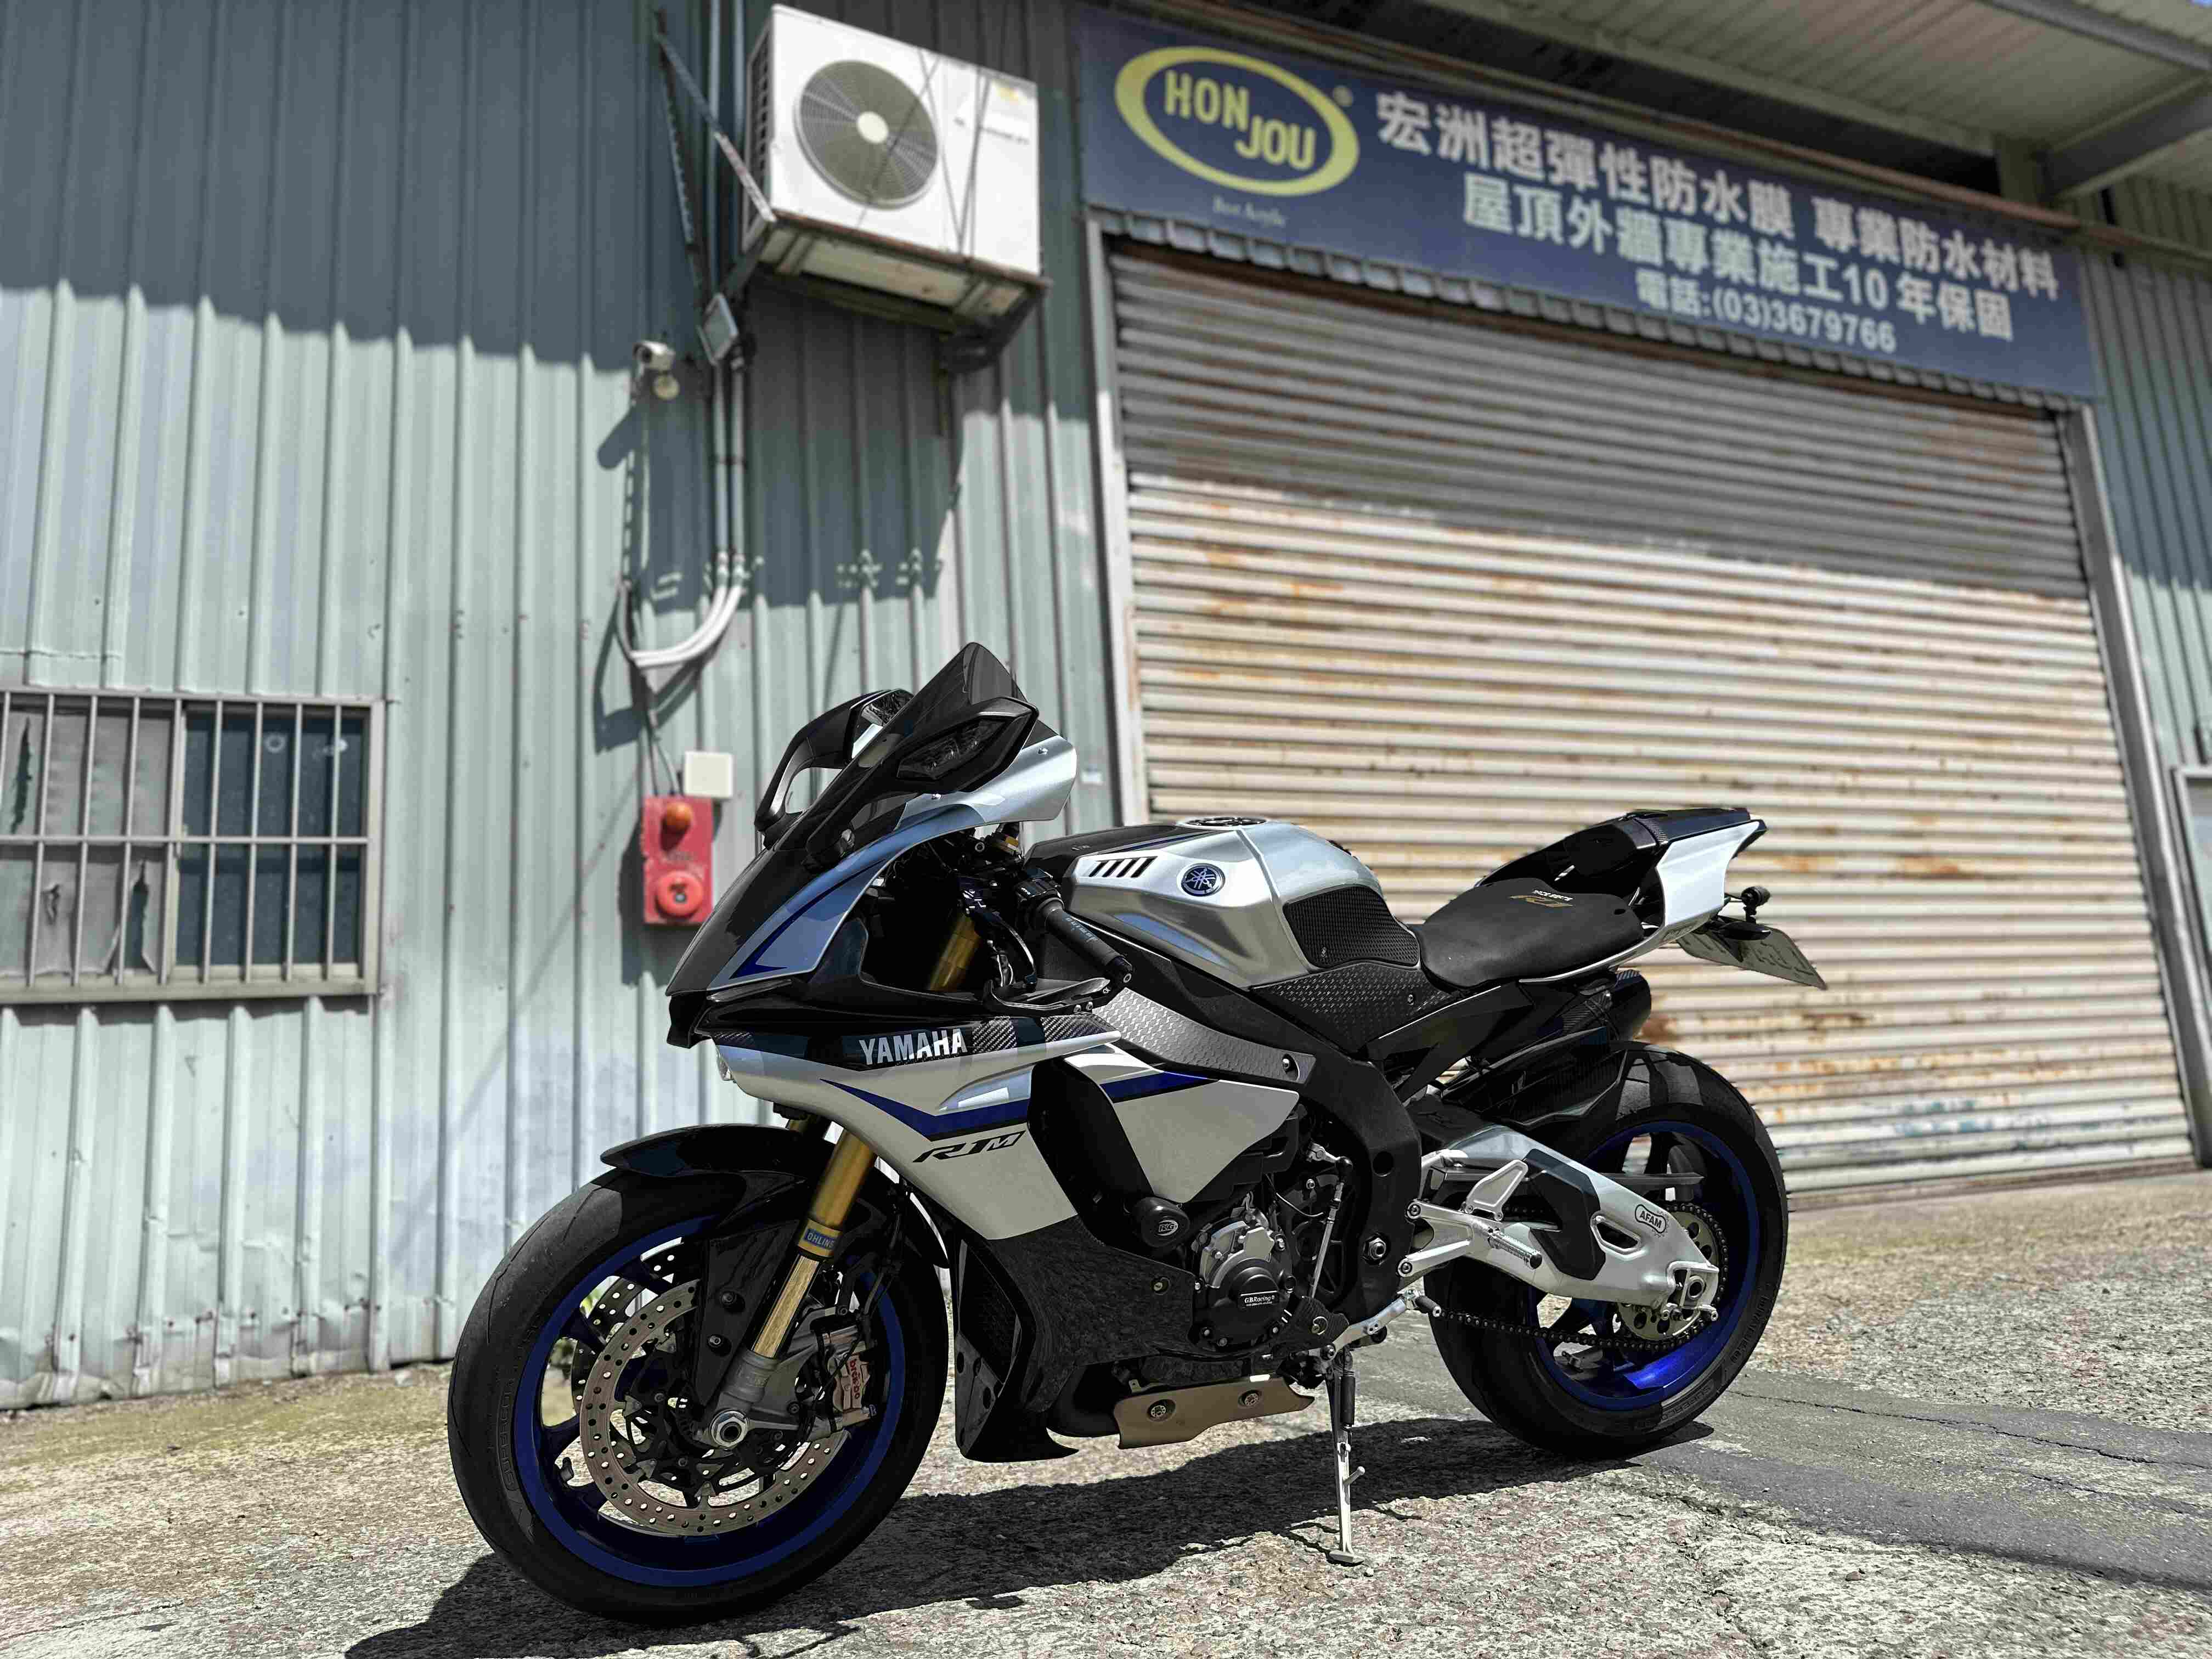 【湯姆重機】YAMAHA YZF-R1M - 「Webike-摩托車市」 湯姆重機 2015 Yamaha YZF-R1M